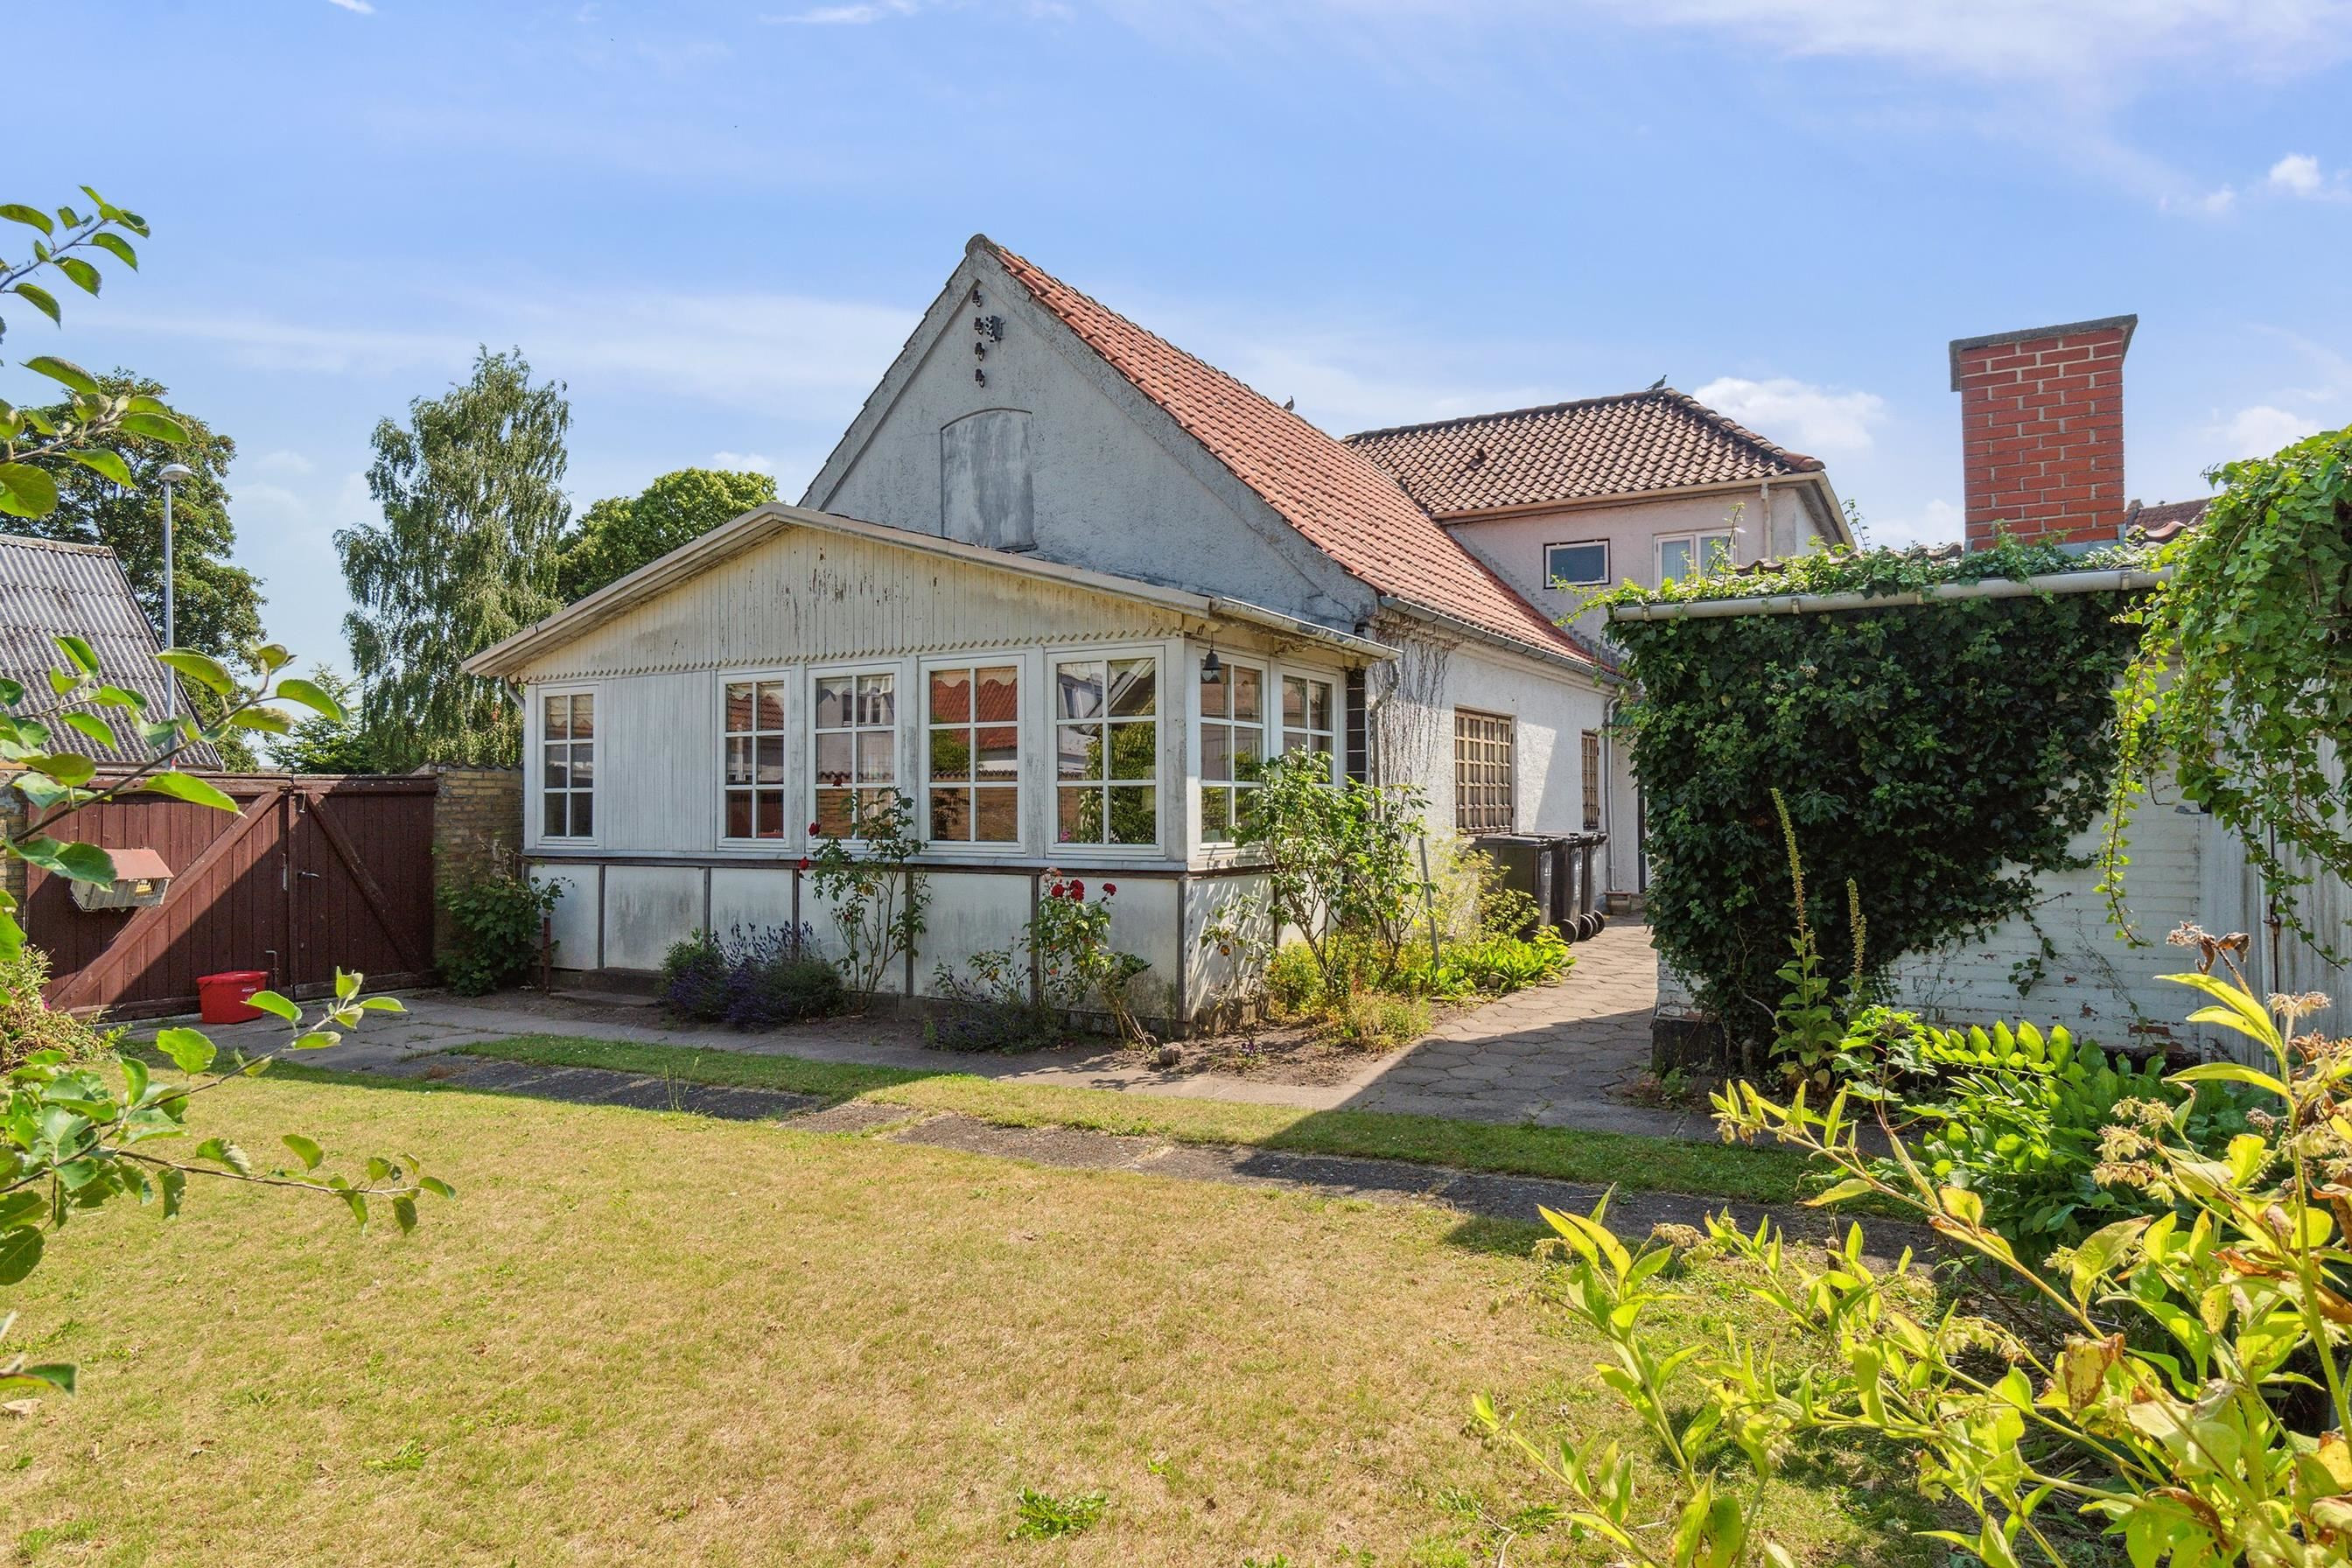 Compose Hvordan Emuler Billigste boliger til salg i Fuglebjerg - Priser fra 995.000 kroner | VORES  Fuglebjerg